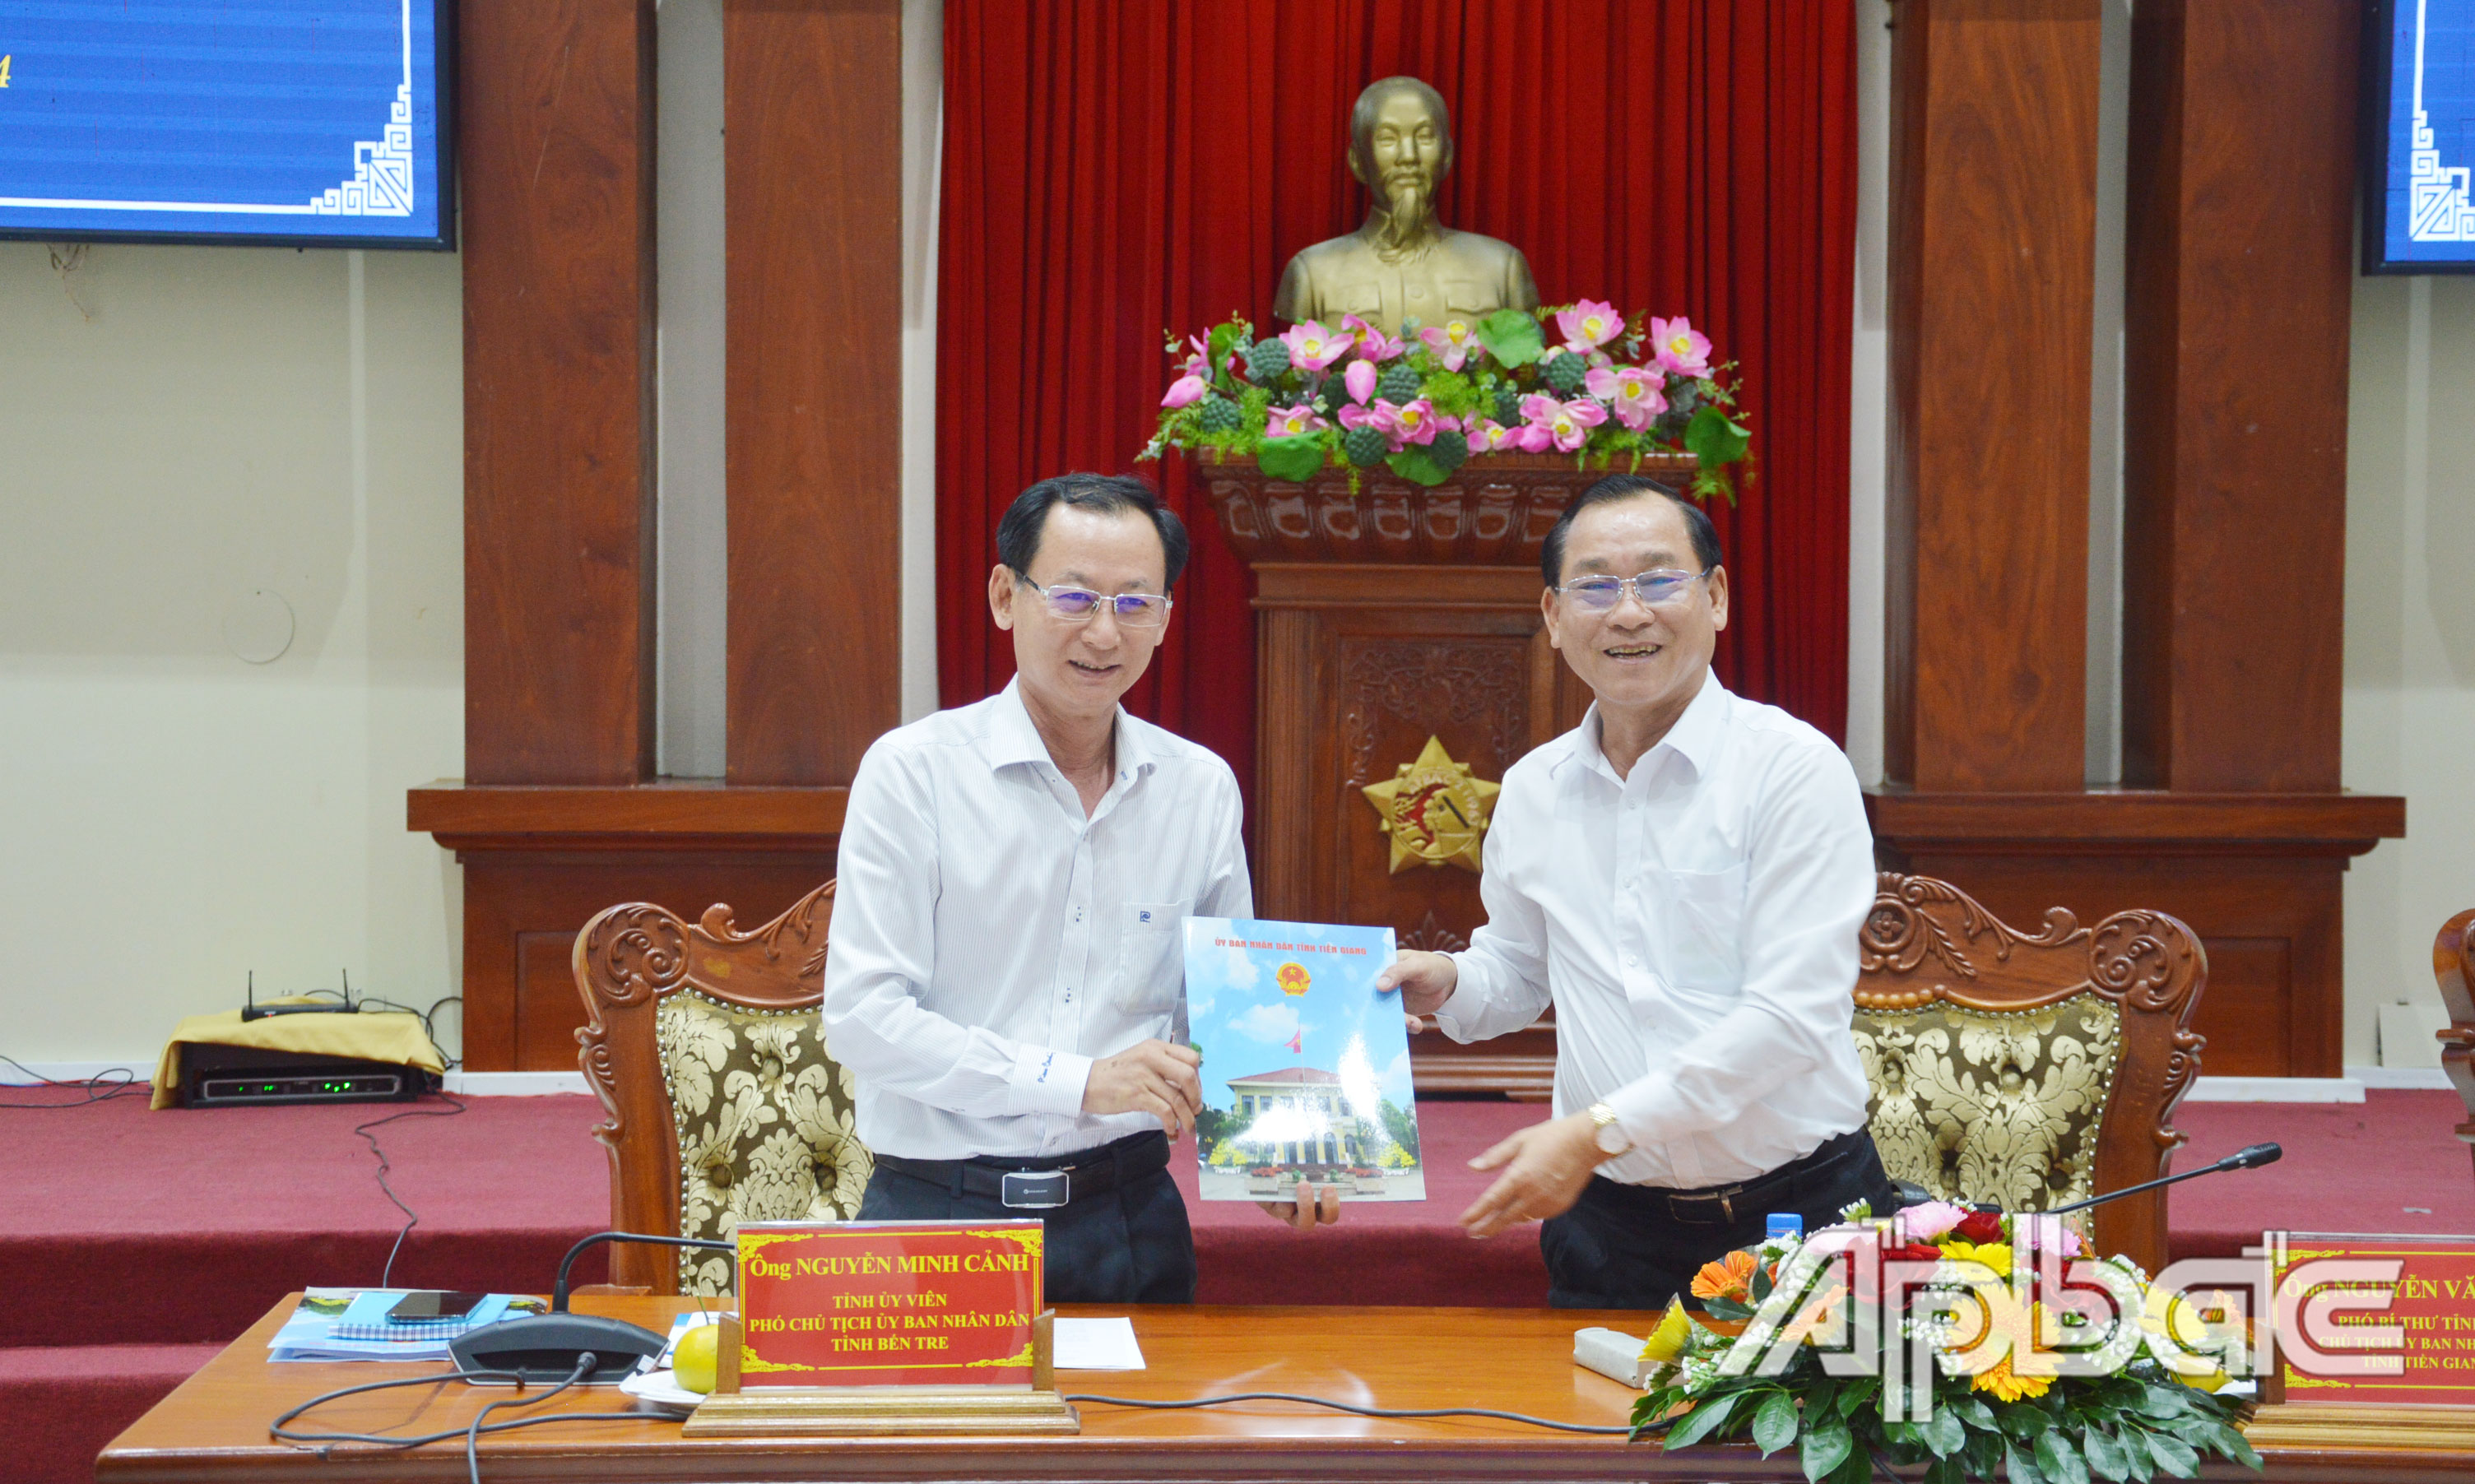 Ký kết biên bản chuyển giao Trưởng Ban điều hành Đề án liên kết Tiểu vùng từ tỉnh Tiền Giang sang tỉnh Bến Tre.